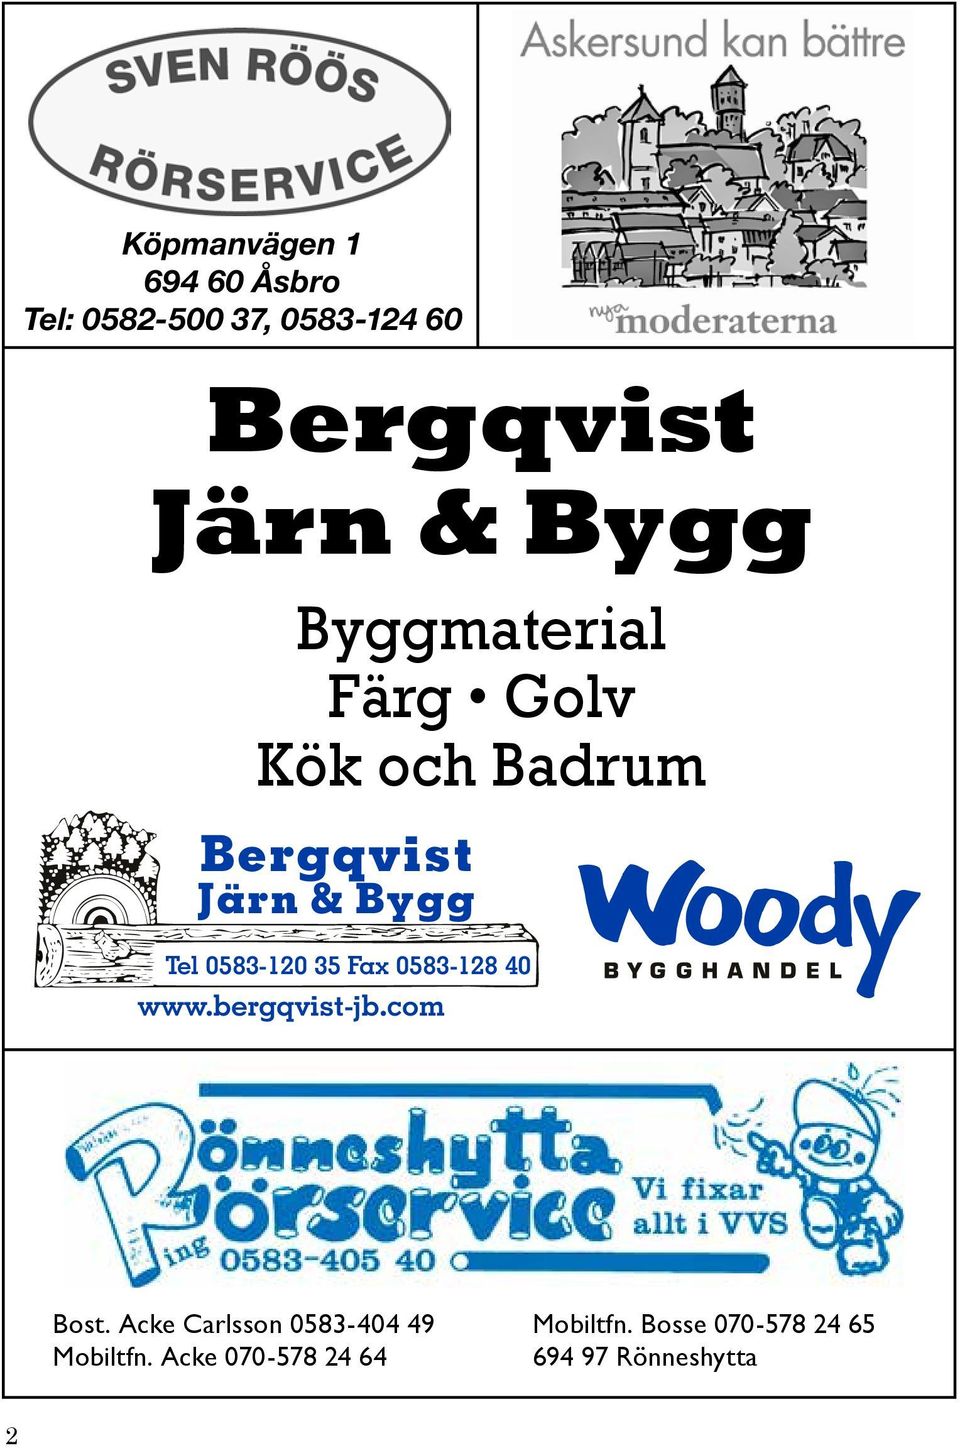 35 Fax 35 0583-128 Fax 0583-128 40 40 www.bergqvist-jb.com www.bergqvist-jb.com Bost.